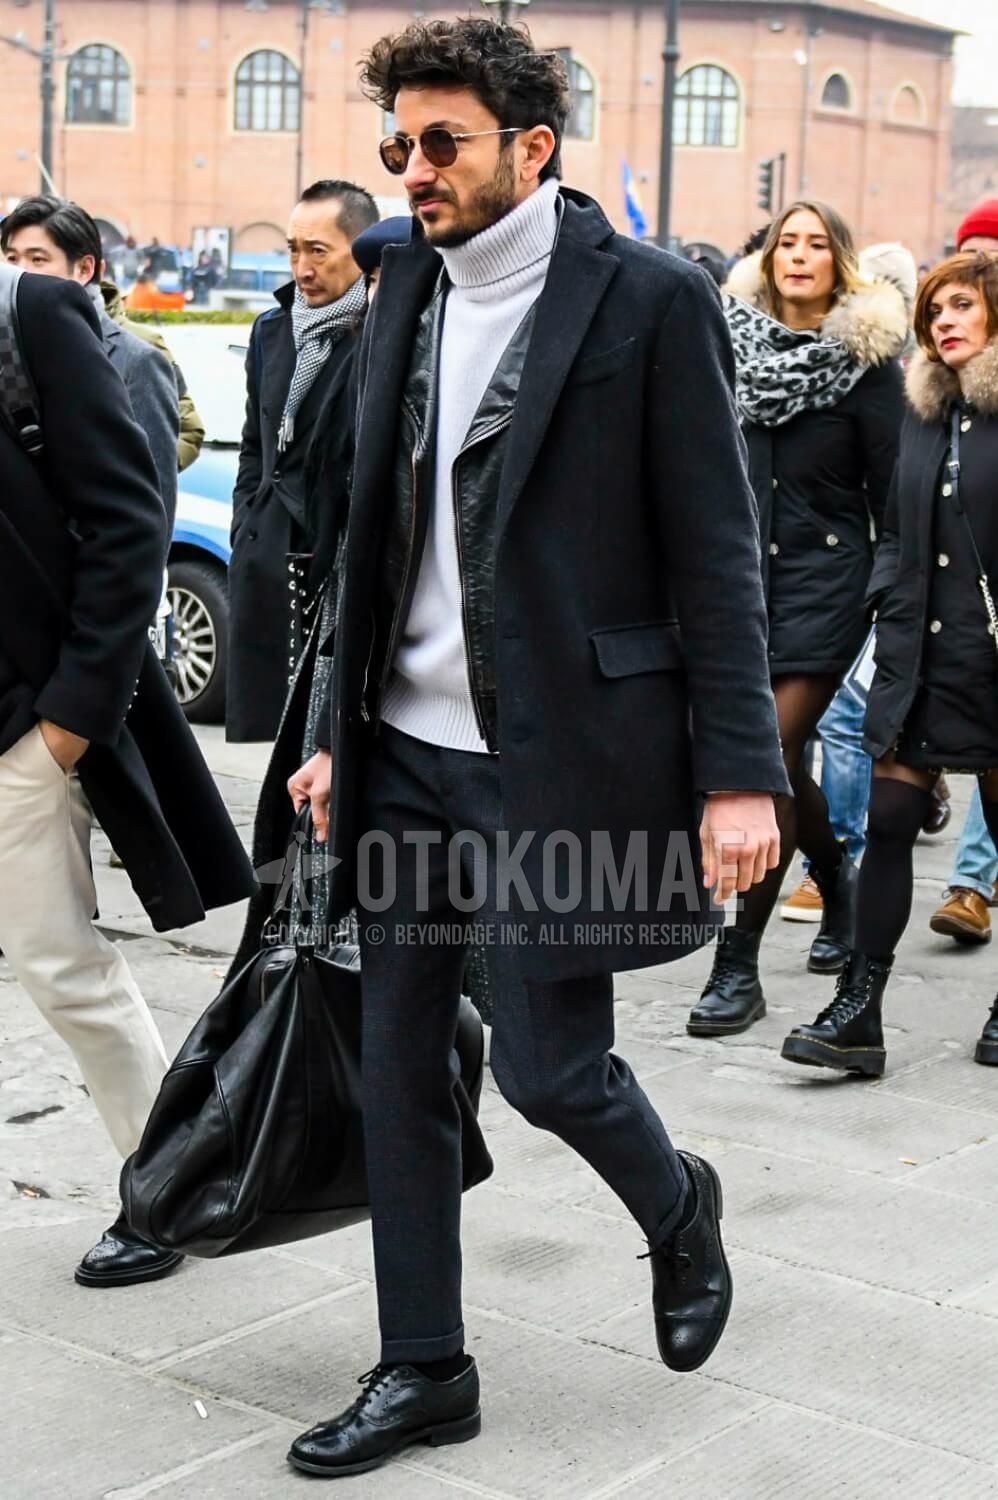 白ニット コーデ メンズ特集 秋冬に実践したい大人の着こなし アイテムを紹介 メンズファッションメディア Otokomaeotokomae 男前研究所